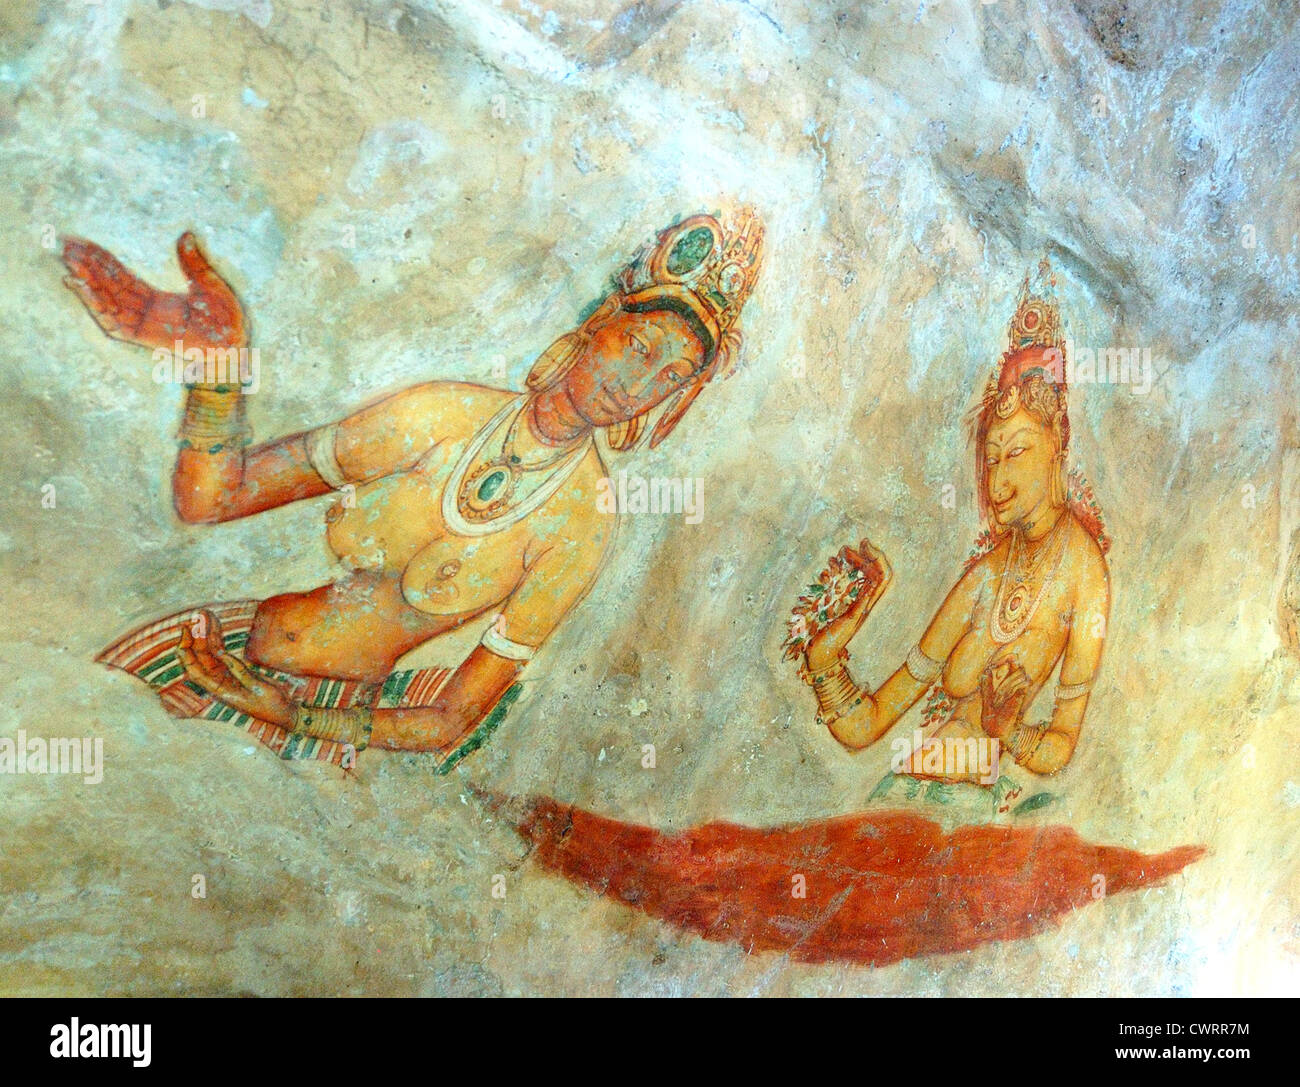 Les nymphes célestes Apsara - peinture ancienne sur les murs de la grotte, Lion, 5ème siècle, Sigiriya, Sri Lanka Banque D'Images